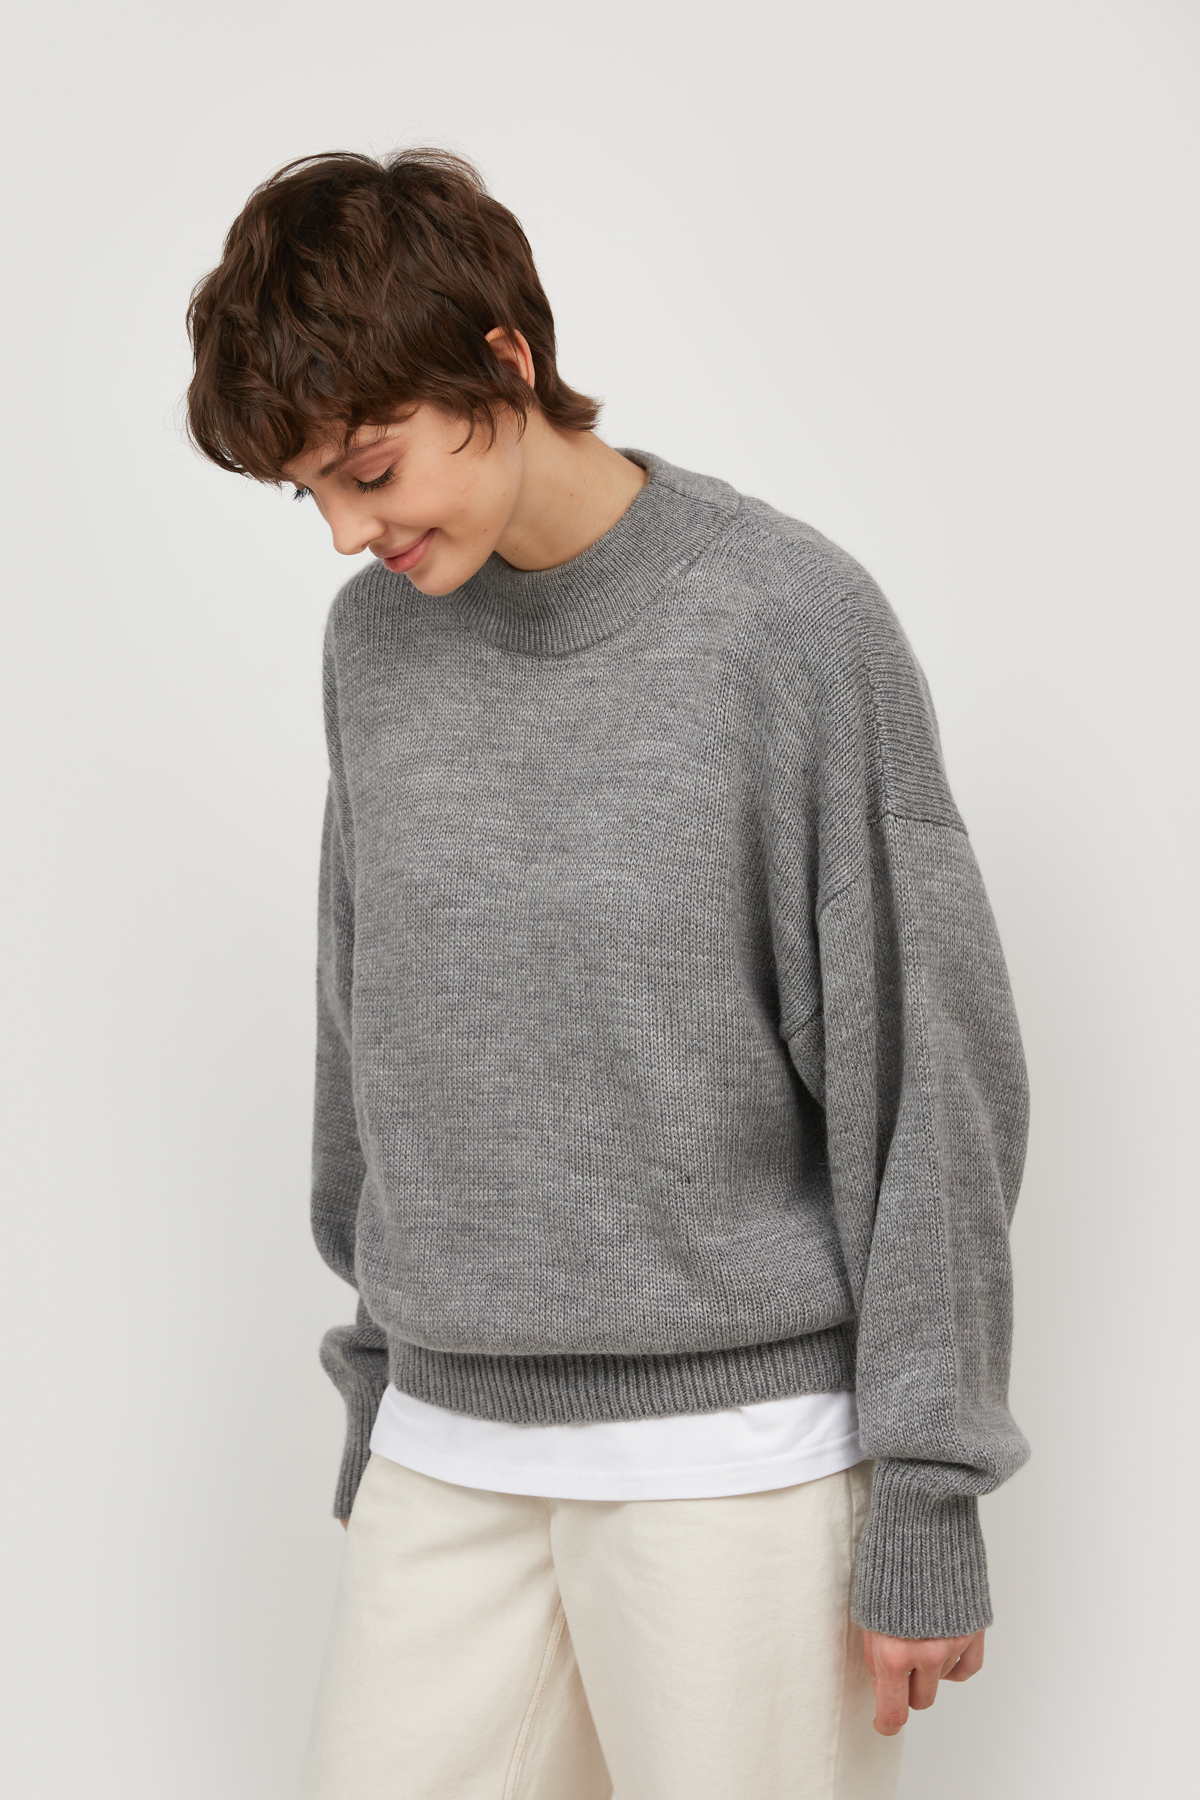 Gray knit sweater, photo 2